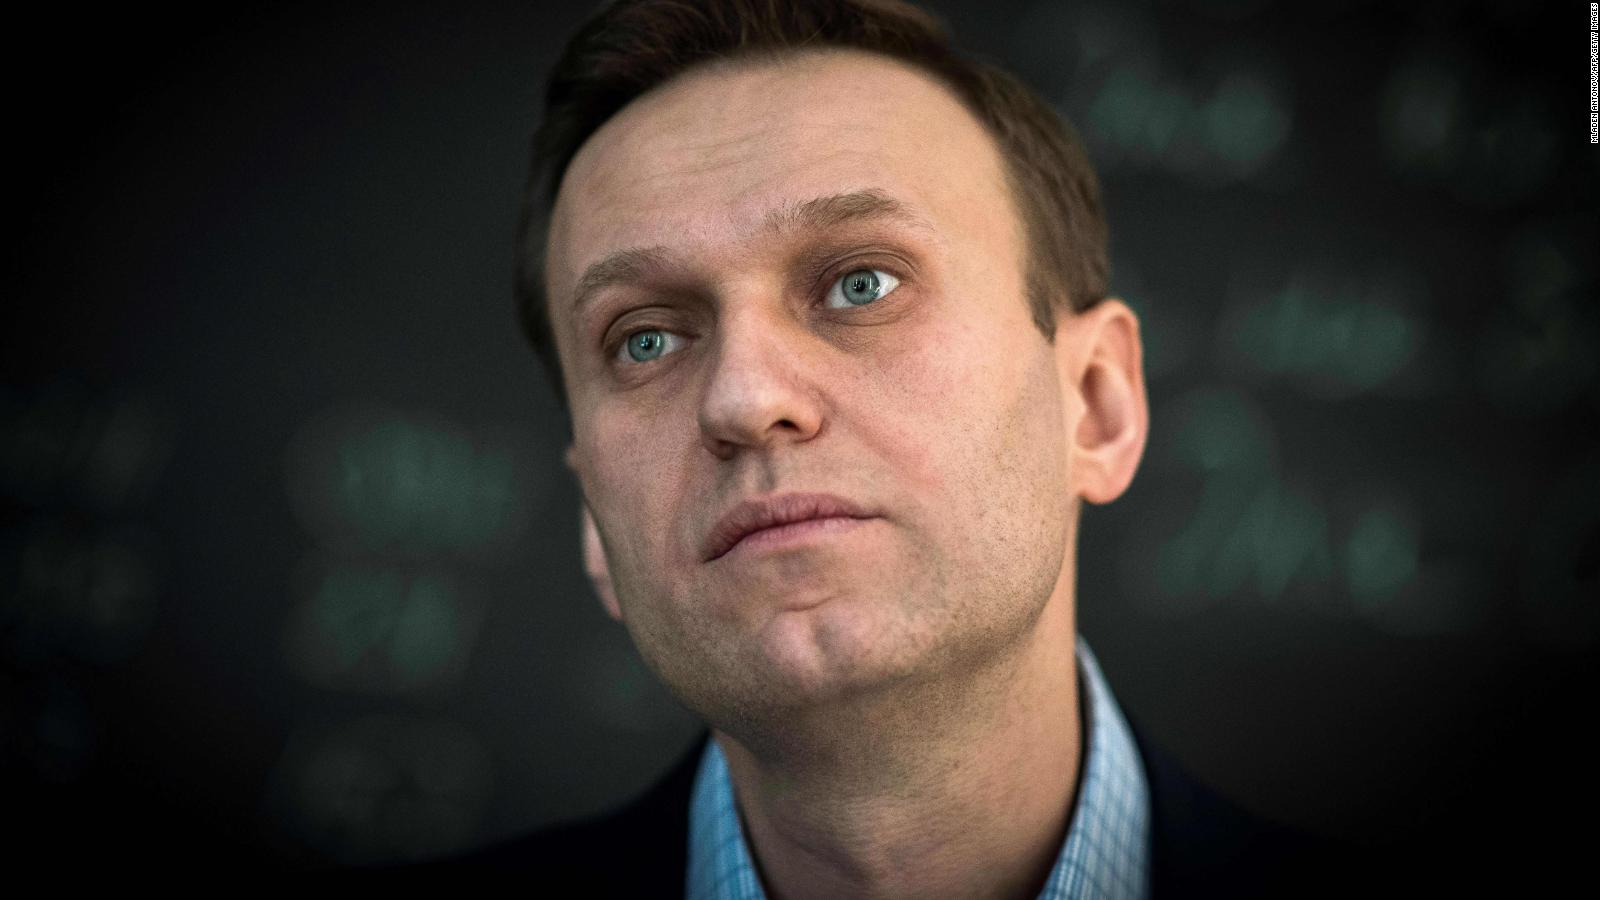 Alexei Navalny meninggal karena sebab alami, menurut laporan medis yang diberikan kepada ibunya